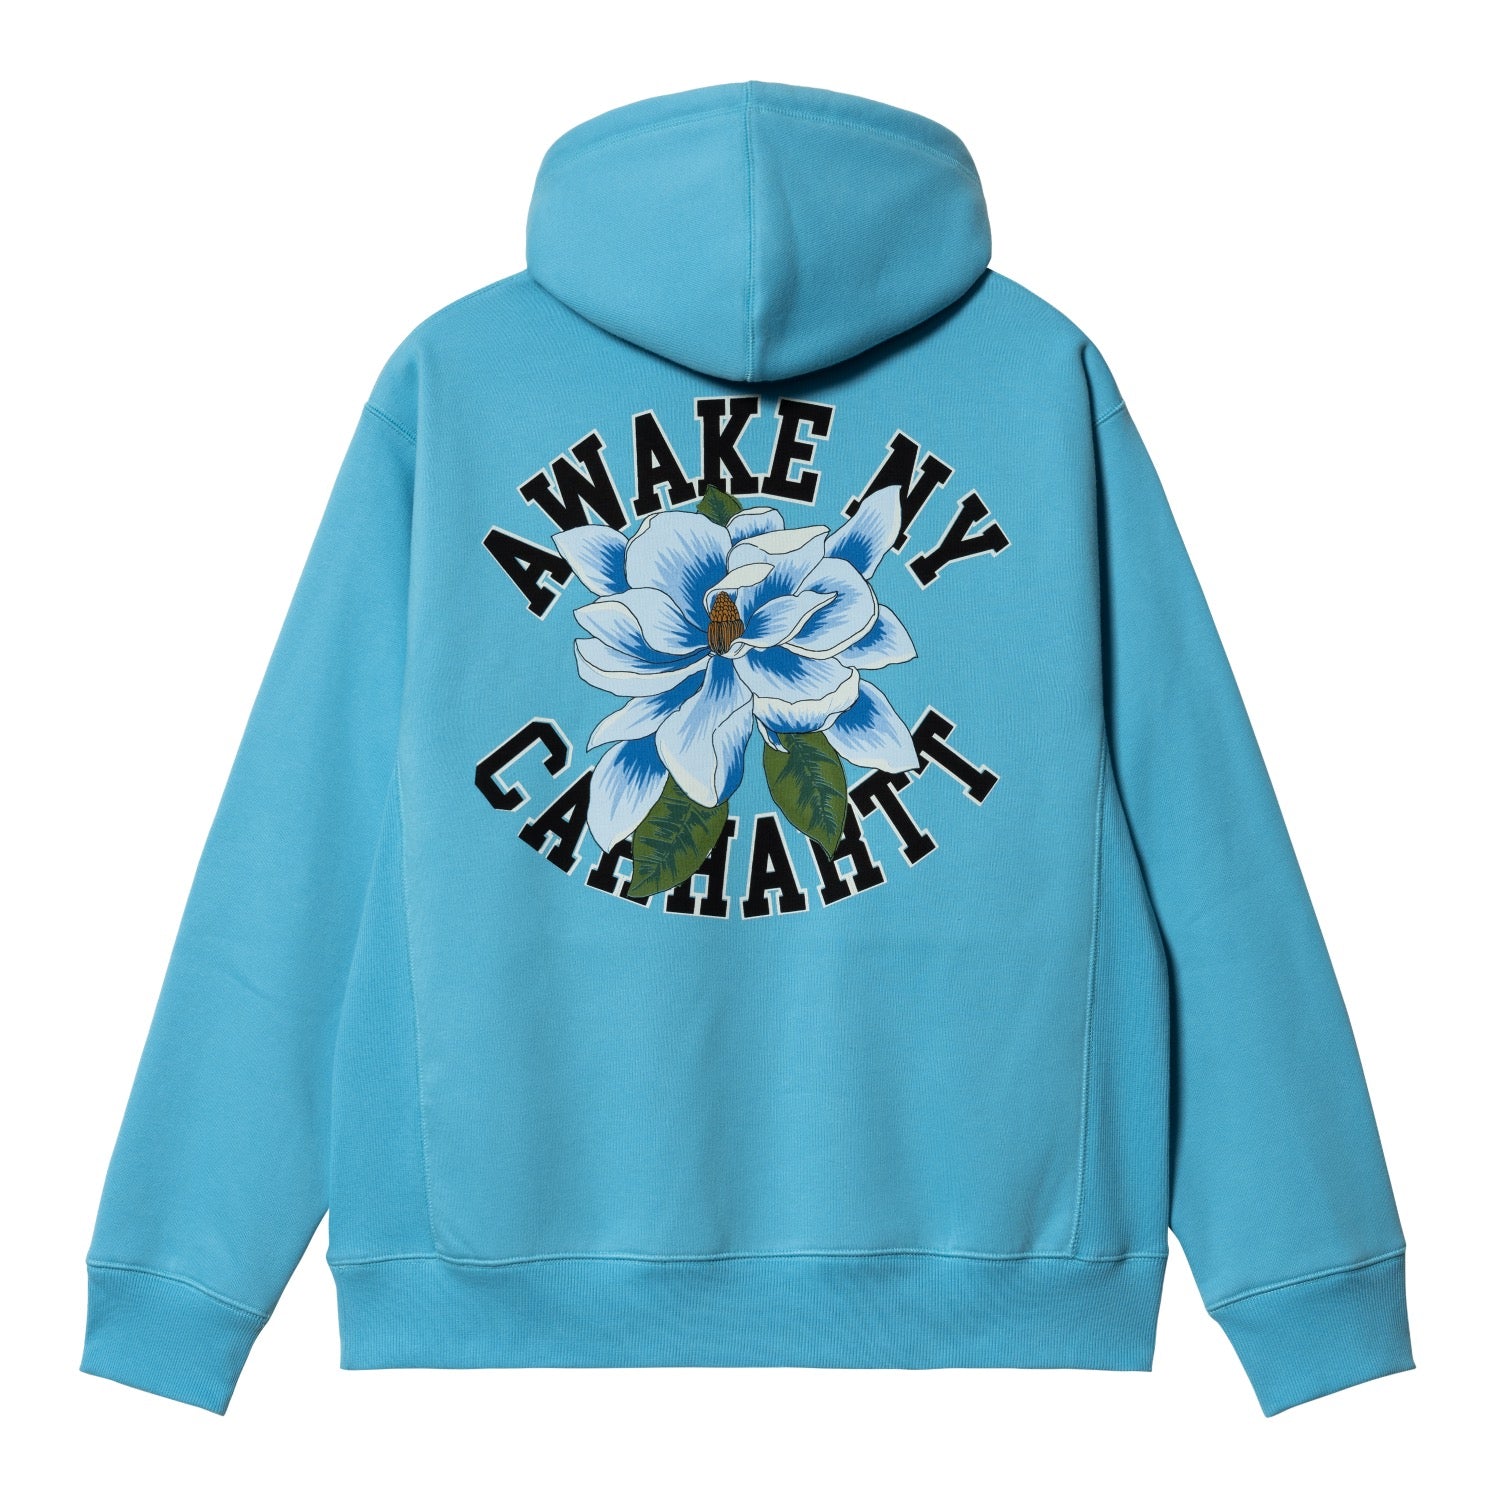 AWAKE NY フーデッドスウェットシャツ - Carhartt WIP